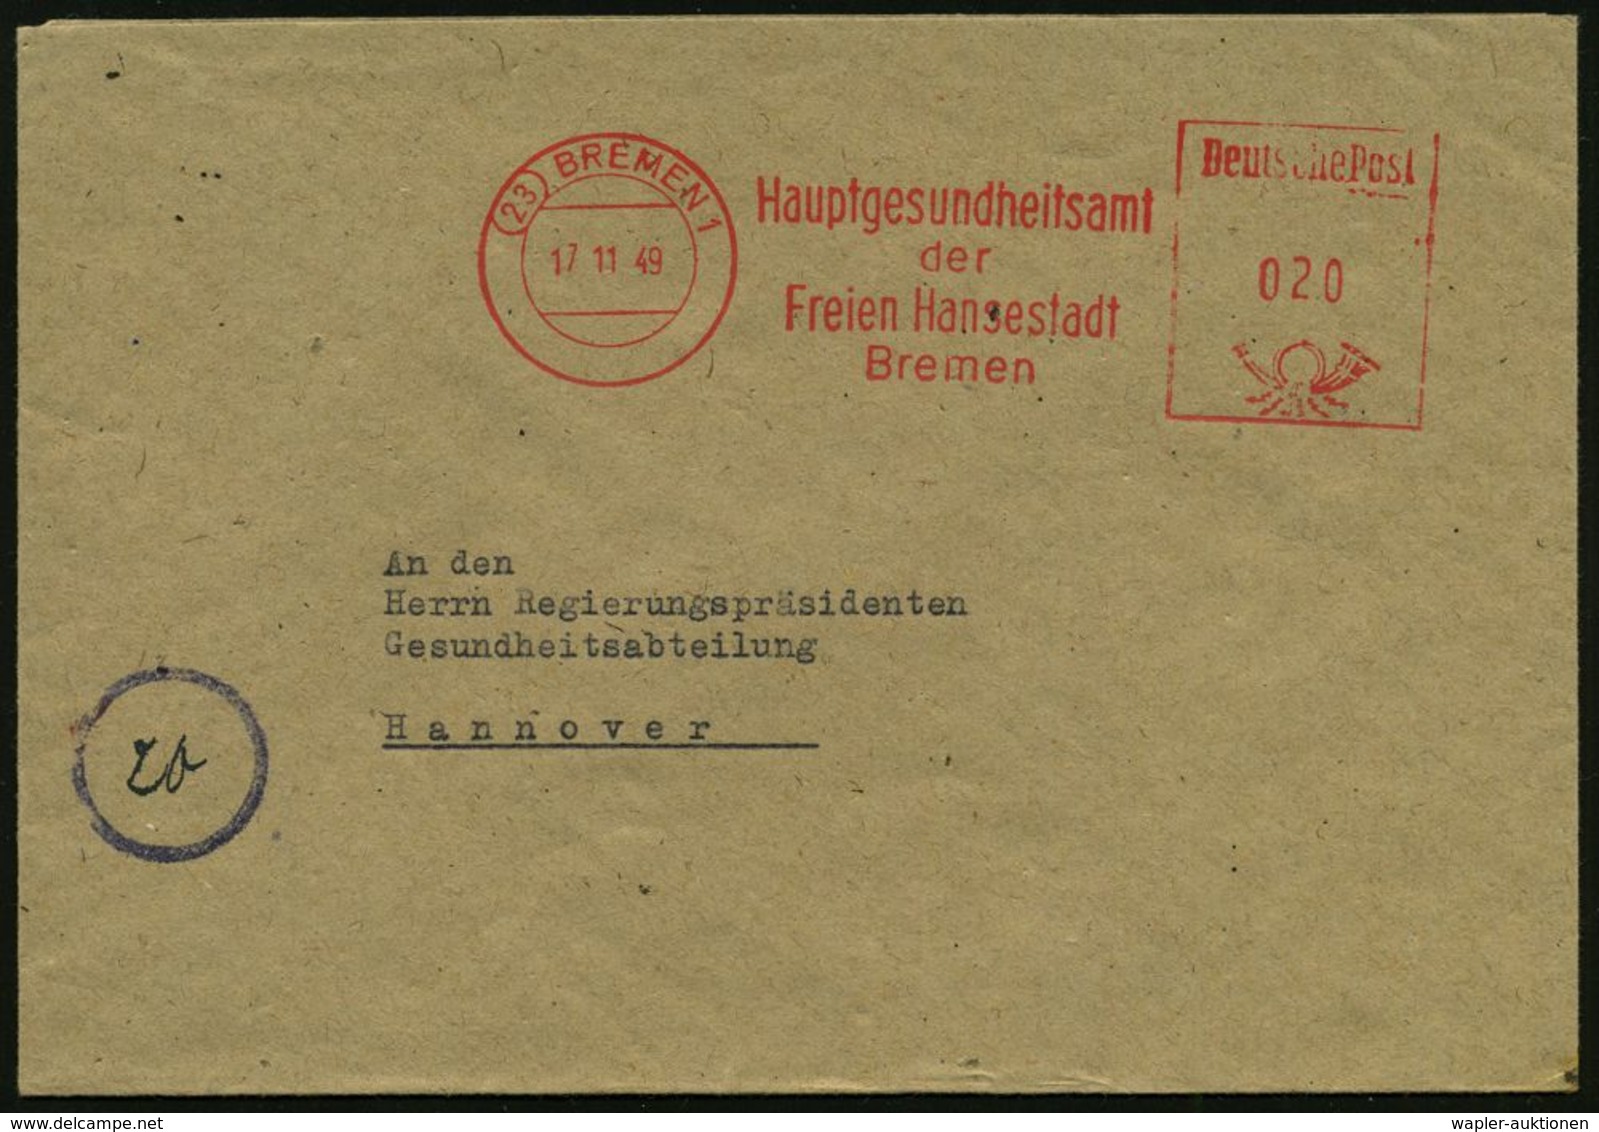 MEDIZINISCHE INSTITUTIONEN & INSTITUTE : (23) BREMEN 1/ Hauptgesundheitsamt/ Der/ Freien Hansestadt 1949 (17.11.) AFS ,  - Medicina